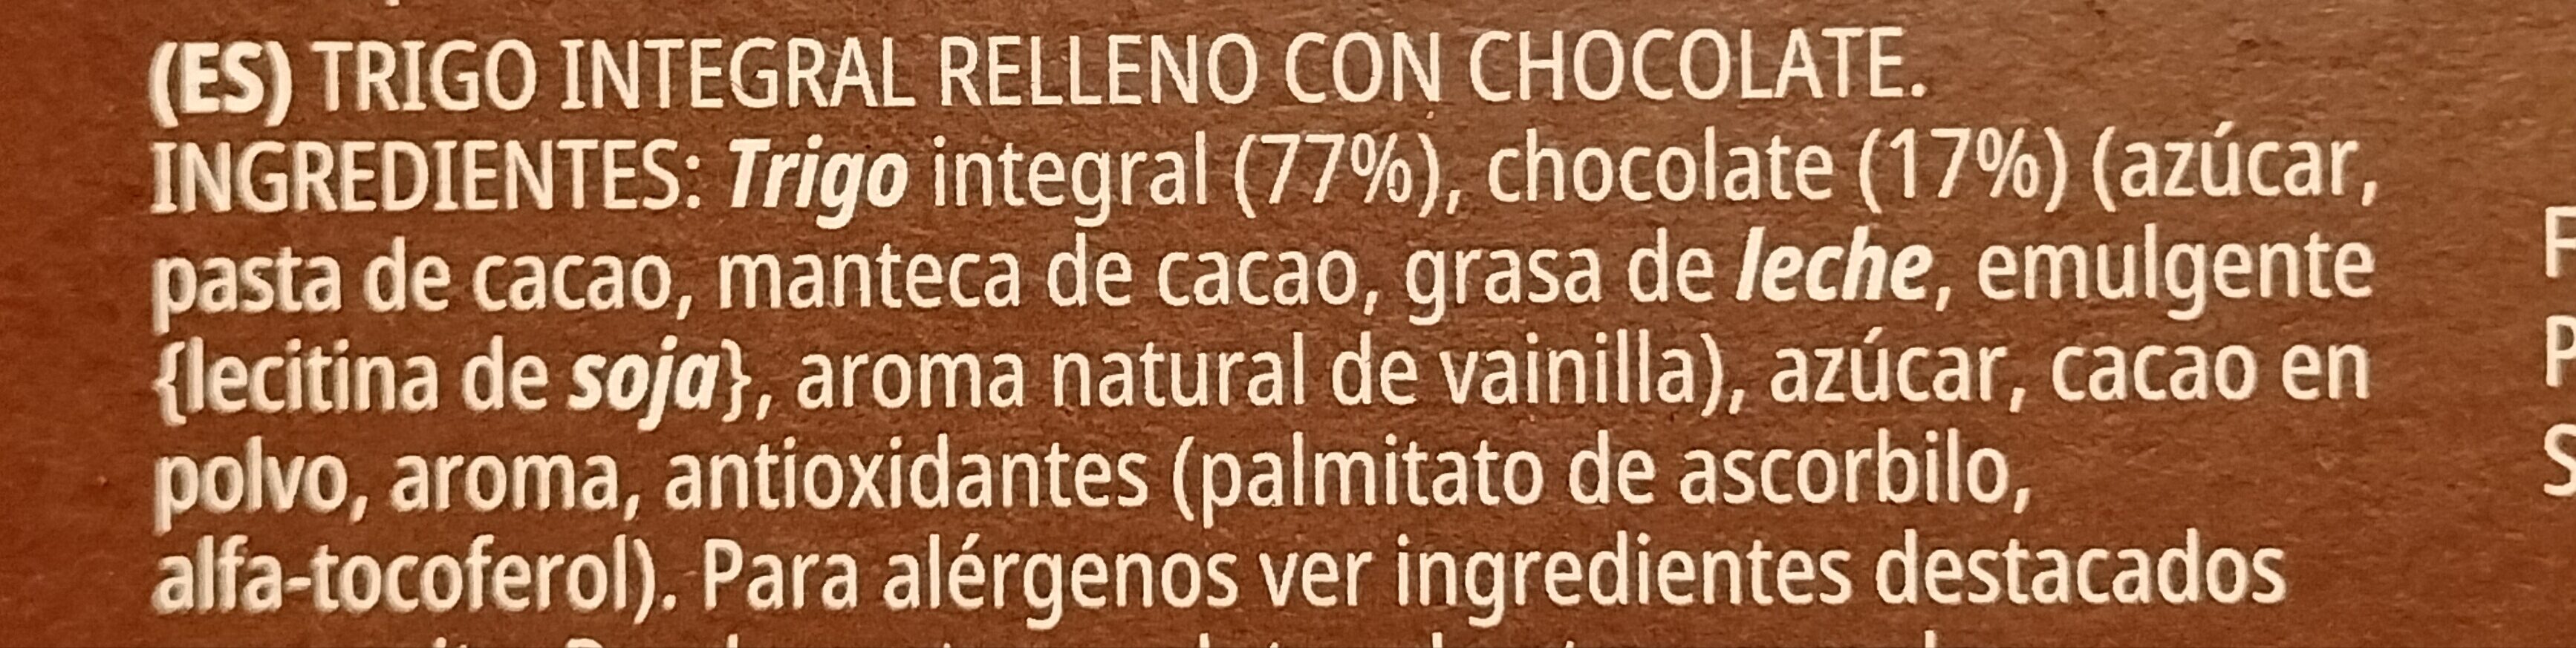 All-bran Choco - Cereales Con Chocolate - Ingredients - es